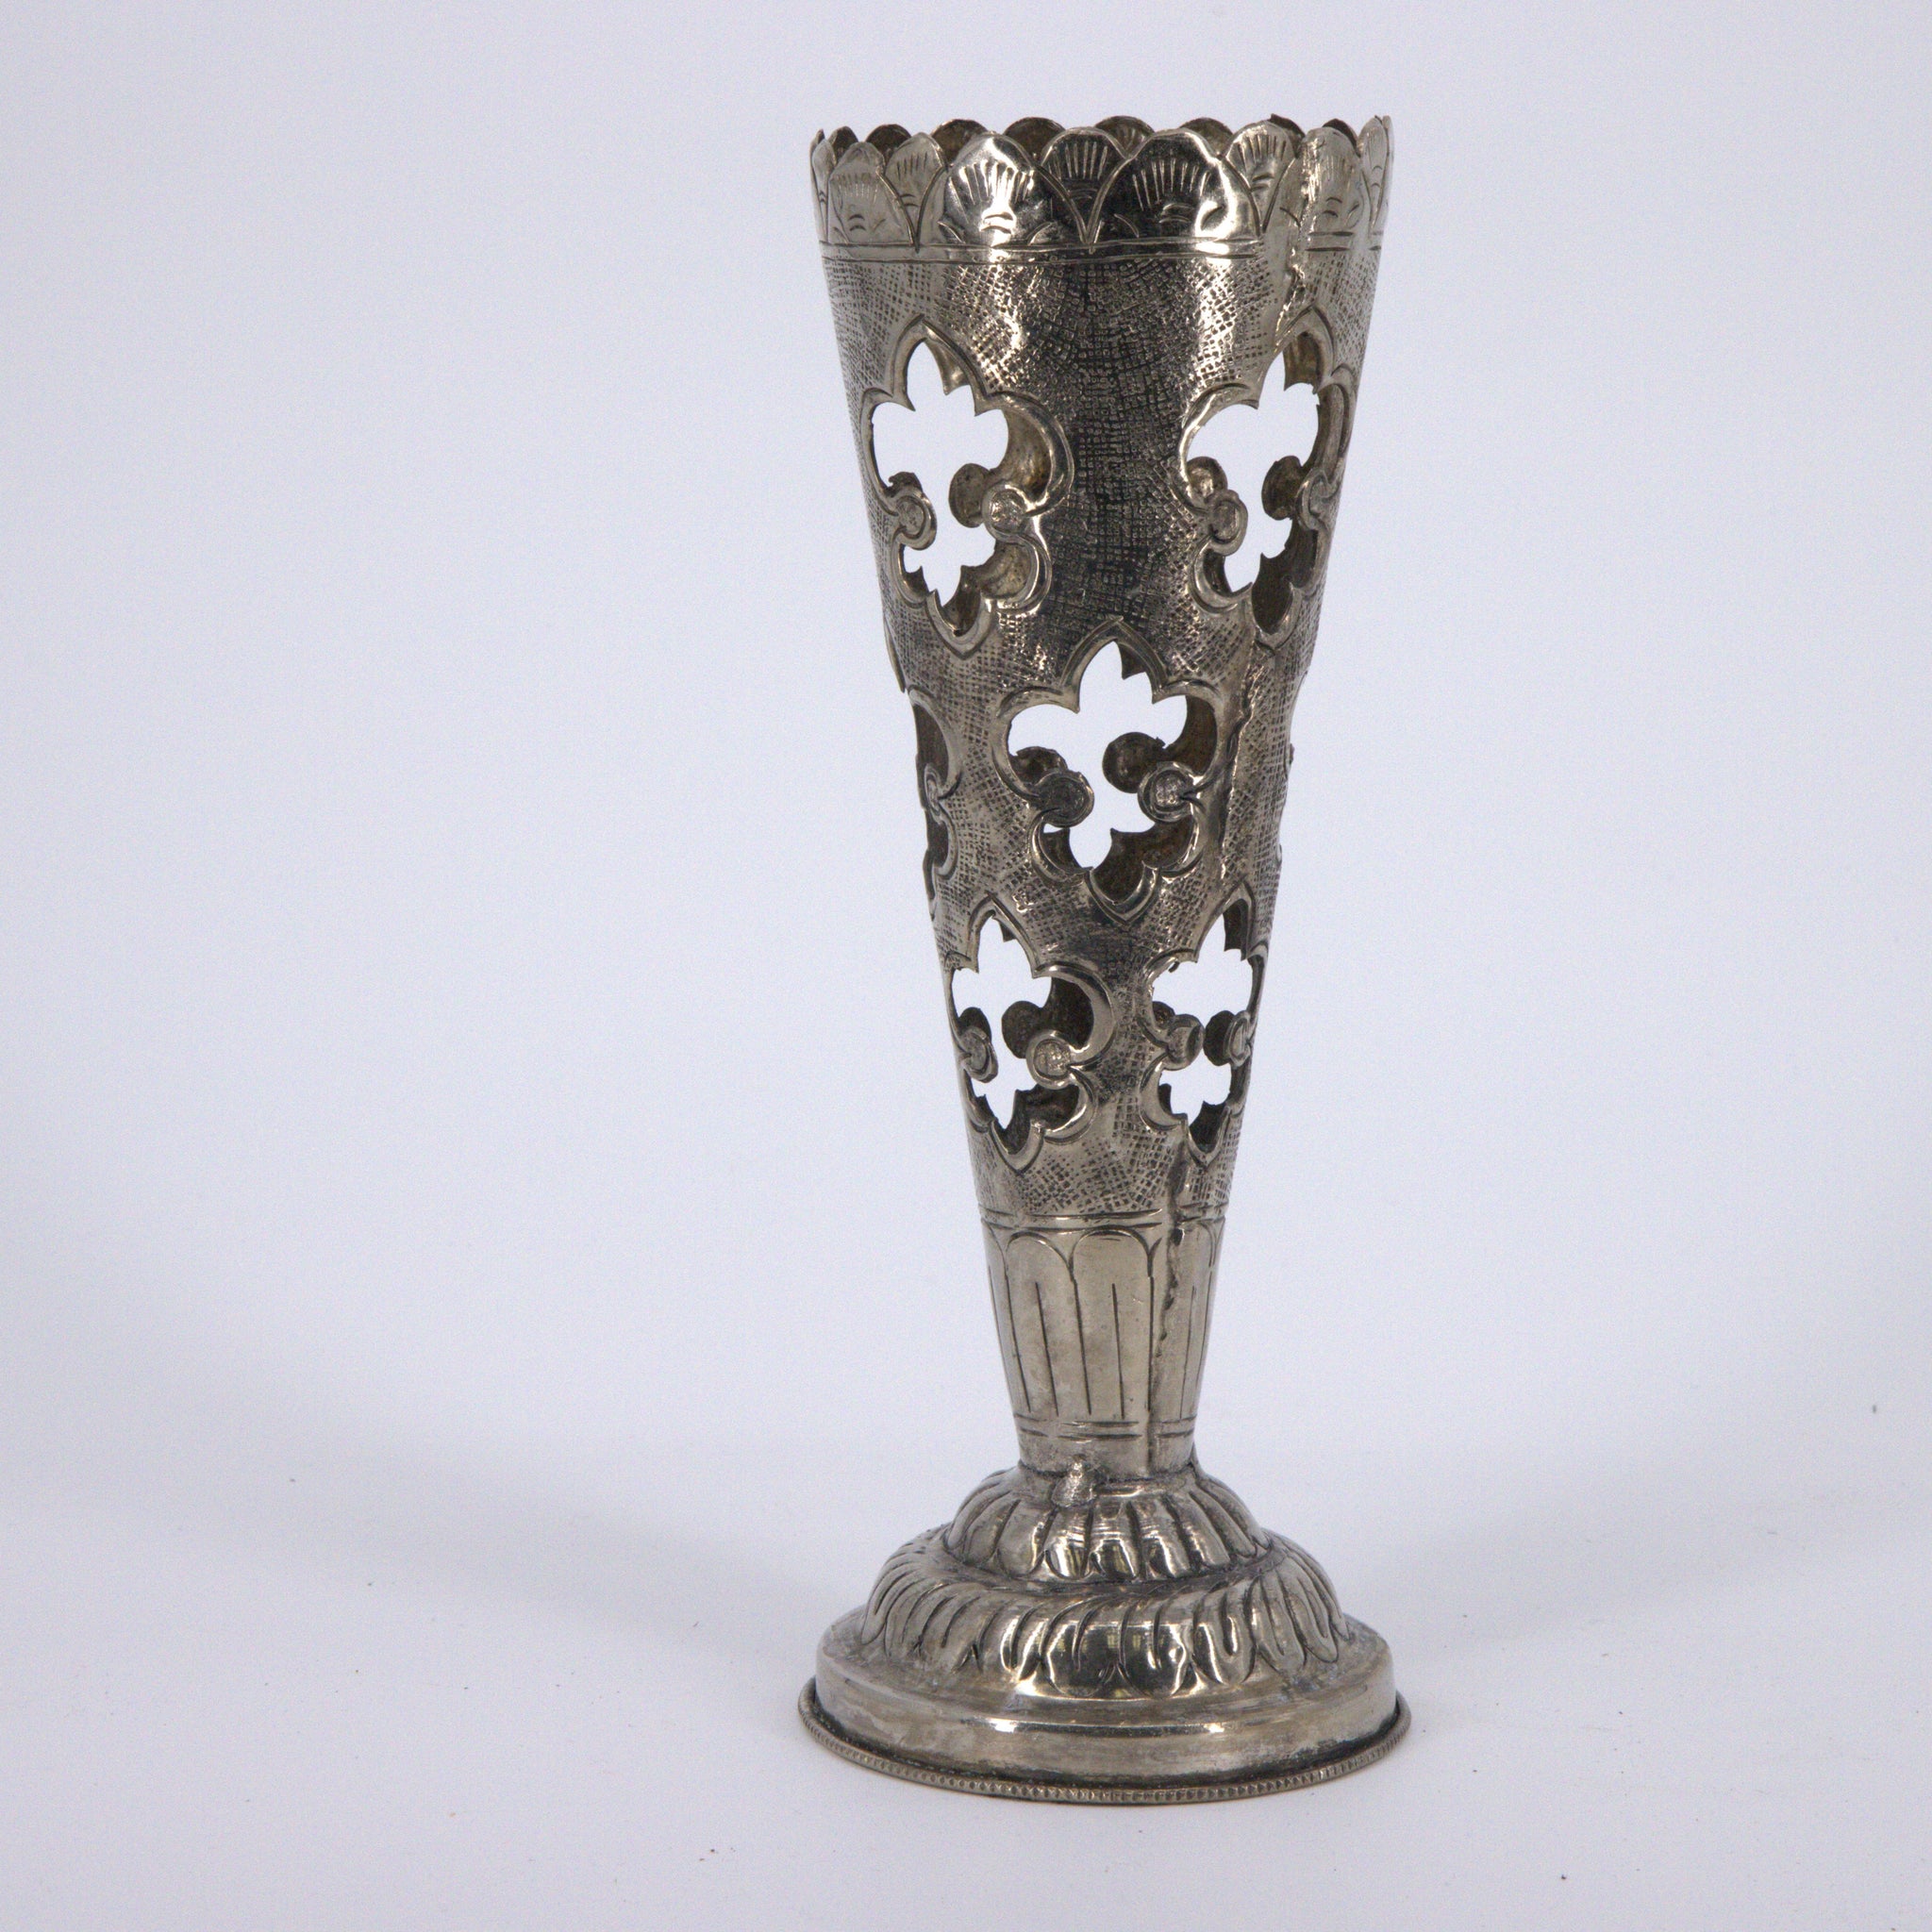 Antique Silver-Plated Pierced Vase with Fleur-de-Lis Design